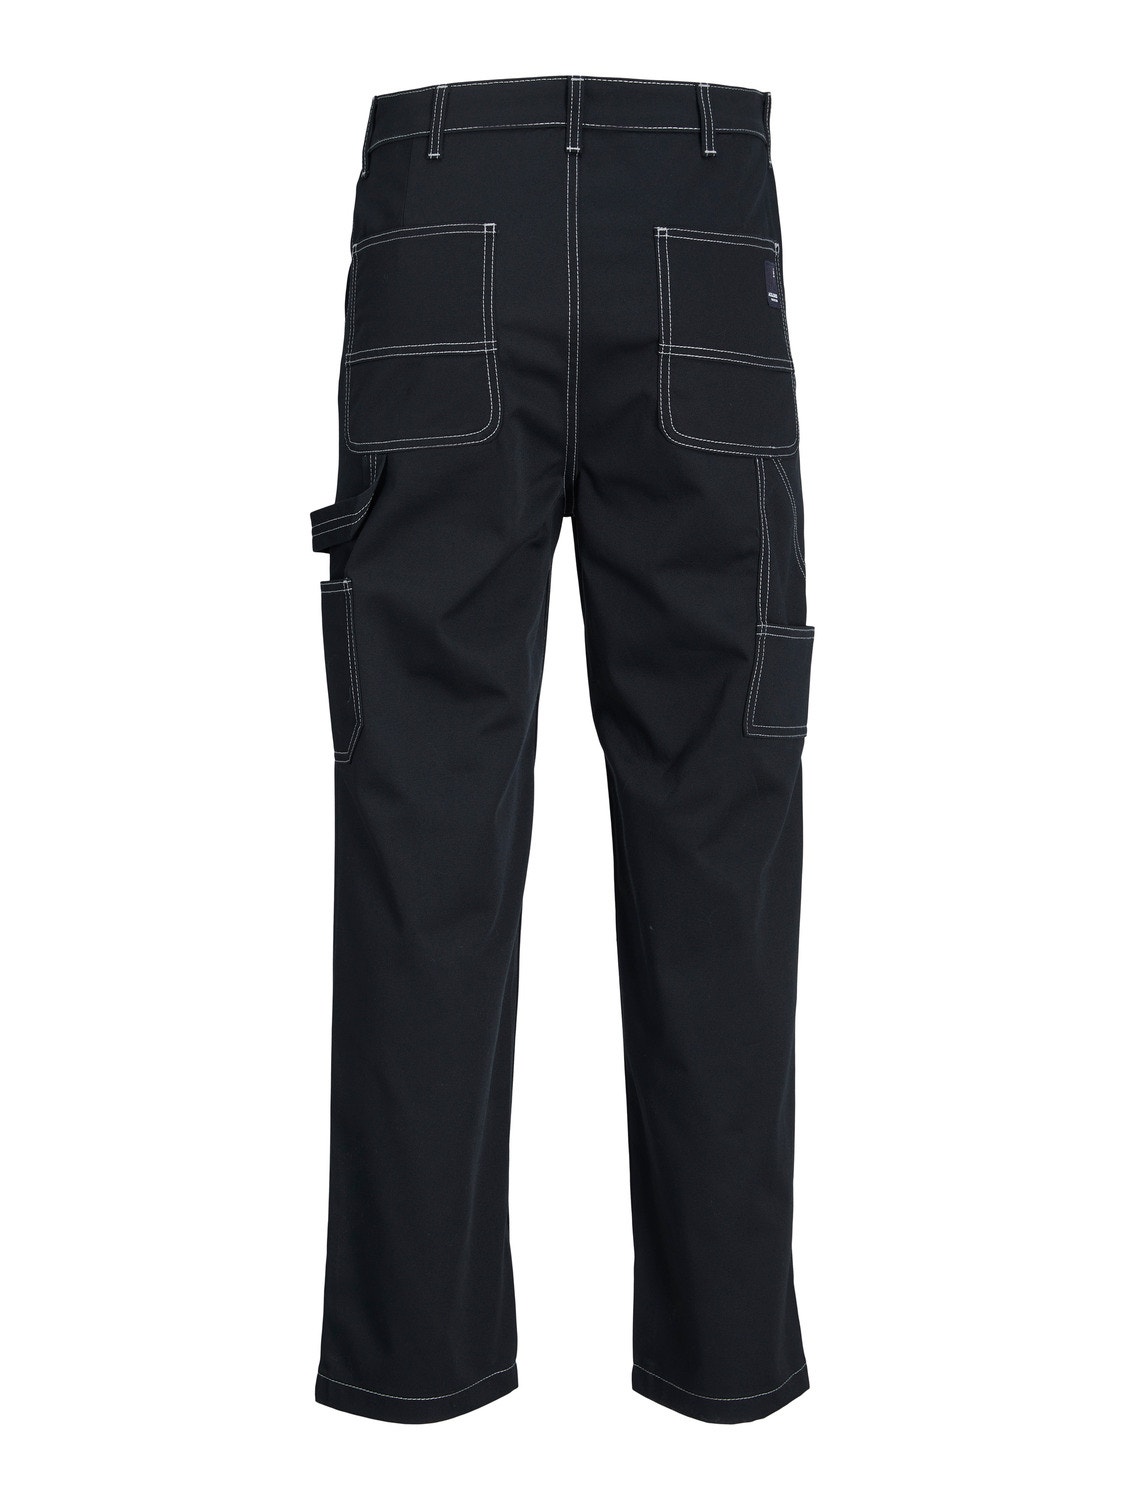 Jack & Jones Loose Fit Spodnie bojówki -Black - 12247473